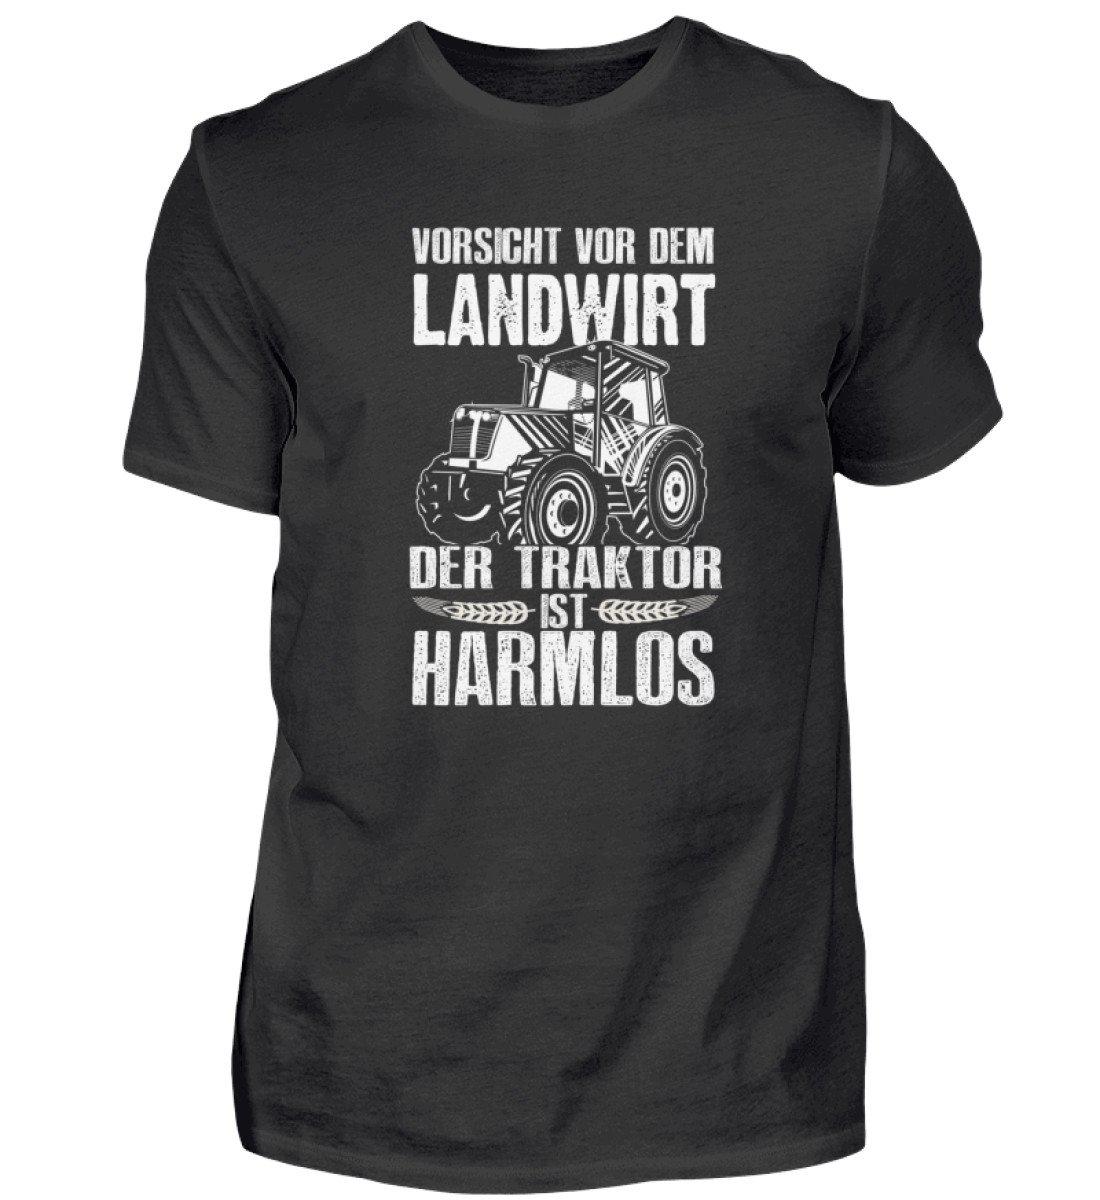 Der Traktor ist harmlos · Herren T-Shirt-Herren Basic T-Shirt-Black-S-Agrarstarz